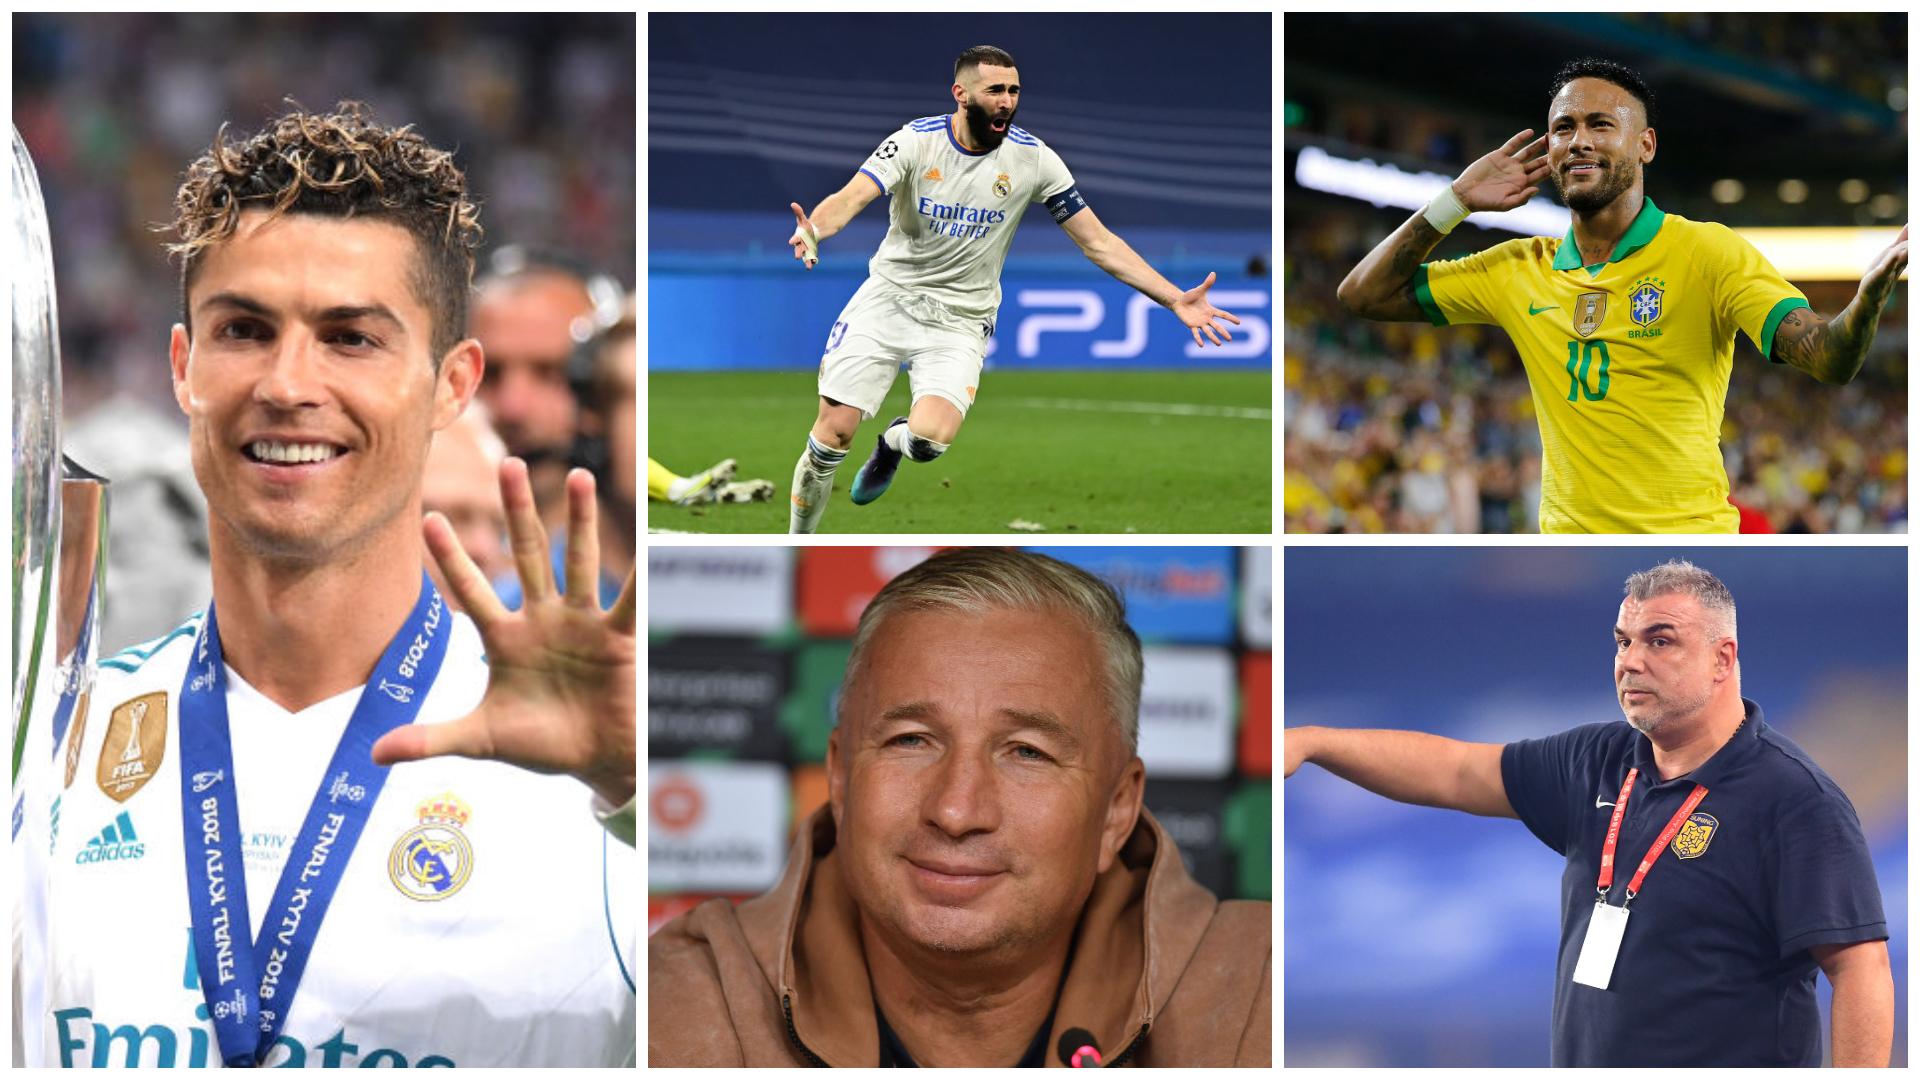 Colaj cucu Cristiano Ronaldo, Benzema, Neymar, Dan Petrescu şi Cosmin Olăroiu